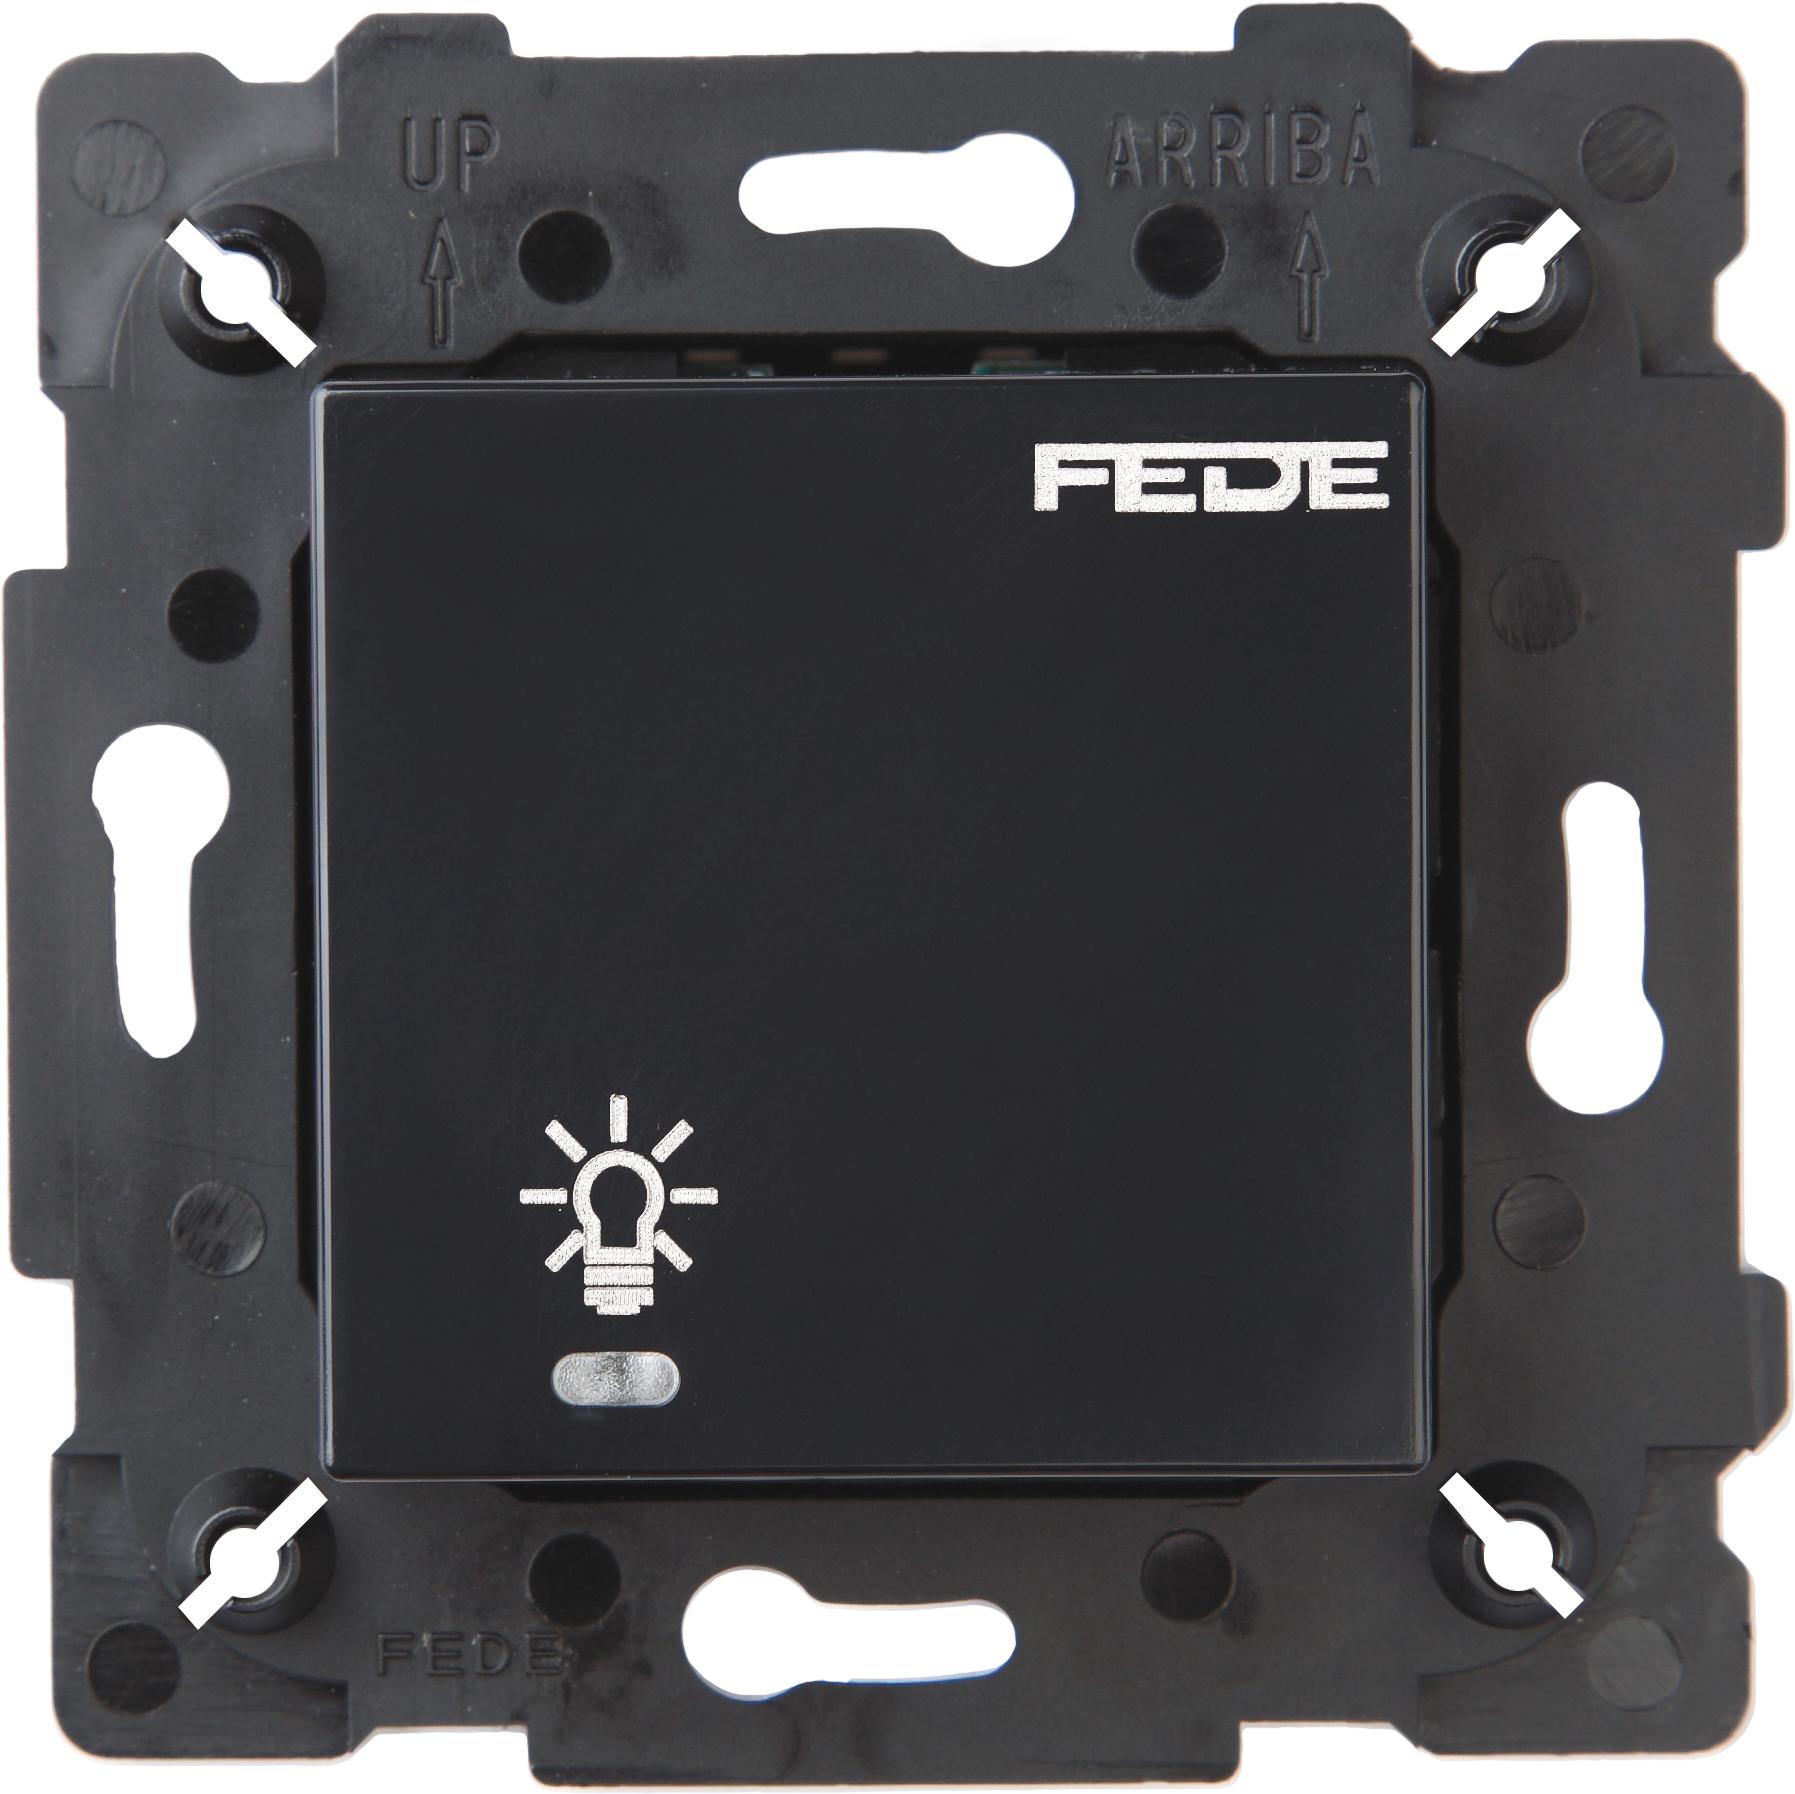  артикул FD28601-M название FEDE Черный Сенсорный одноклавишный выключатель 600 Вт с подсветкой Black (Negro)